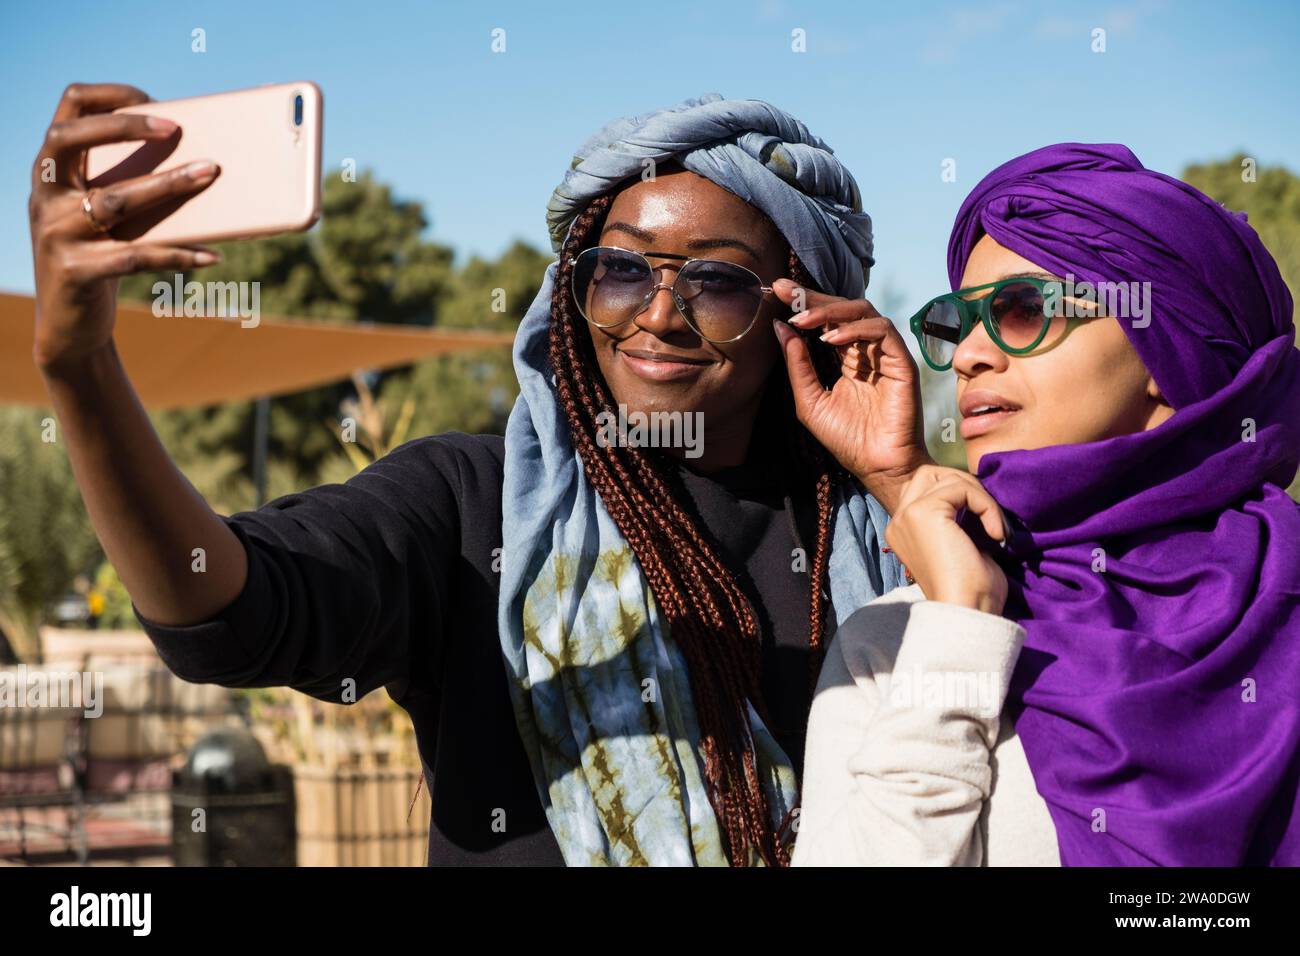 Deux femmes touristes posent pour une photo selfie de leurs foulards du désert, Sahara Desert, Maroc Banque D'Images